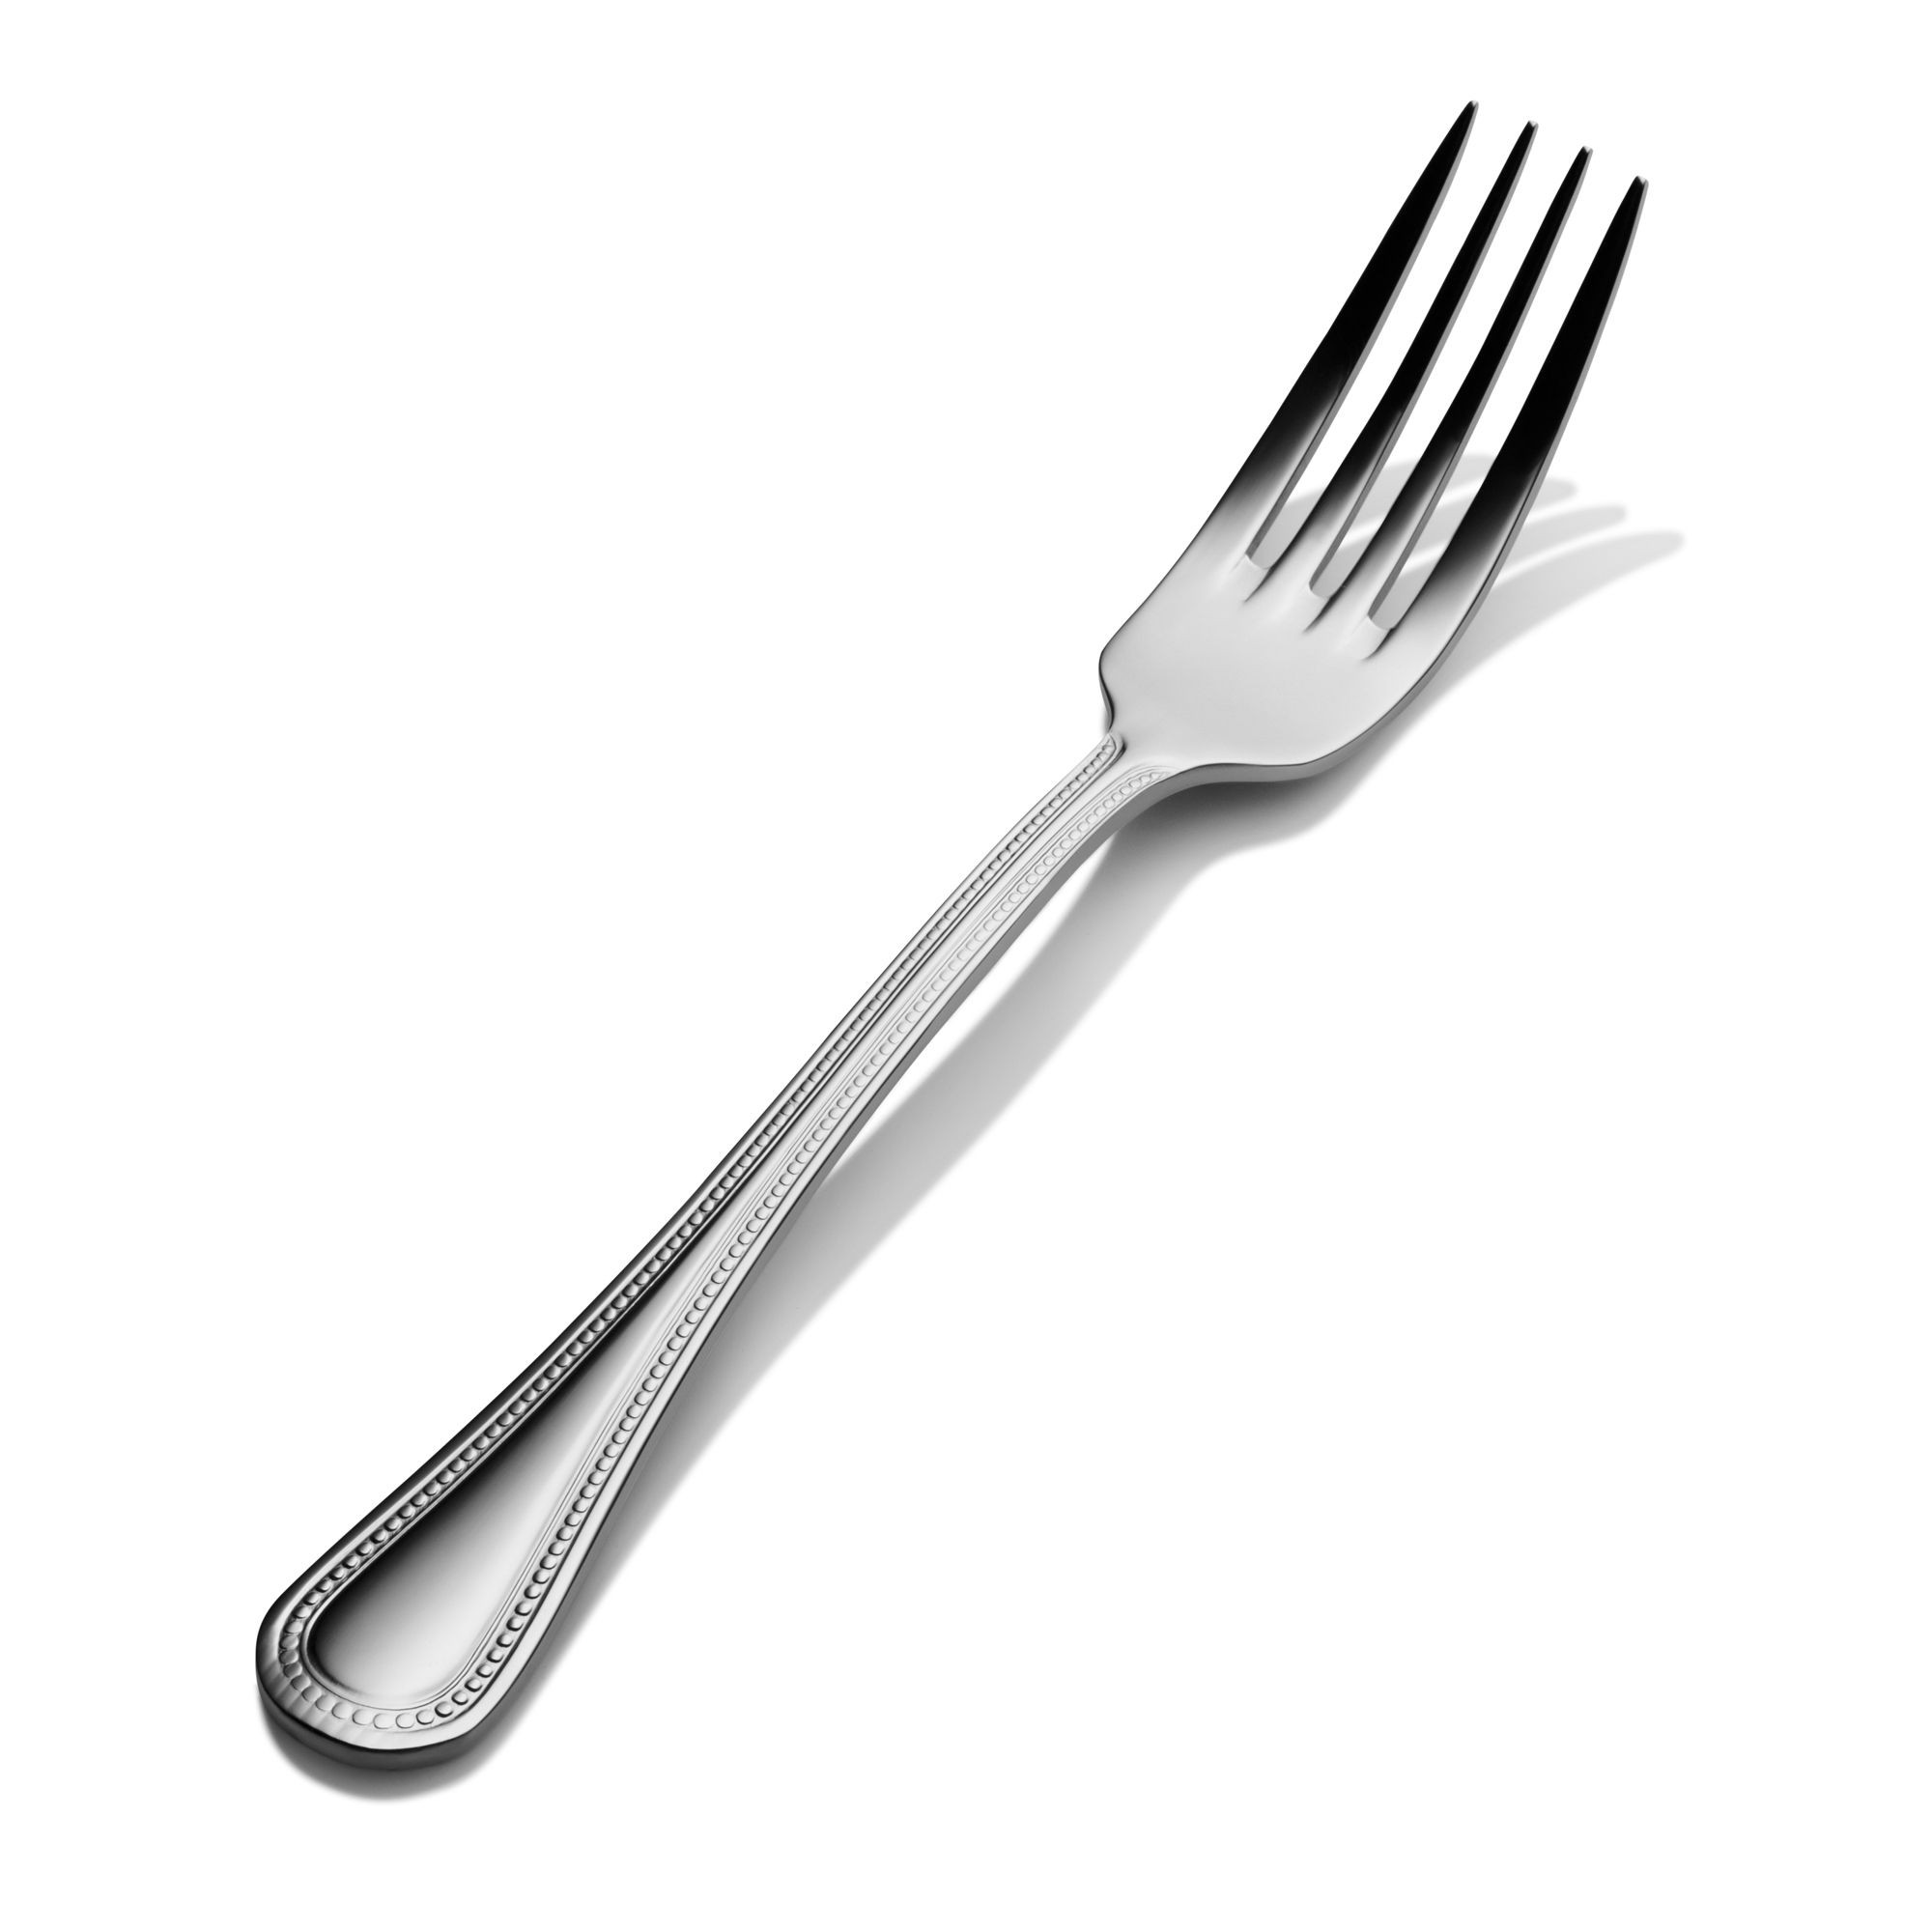 Bon Chef S1005 Sombrero 18/8 Stainless Steel Regular Dinner Fork